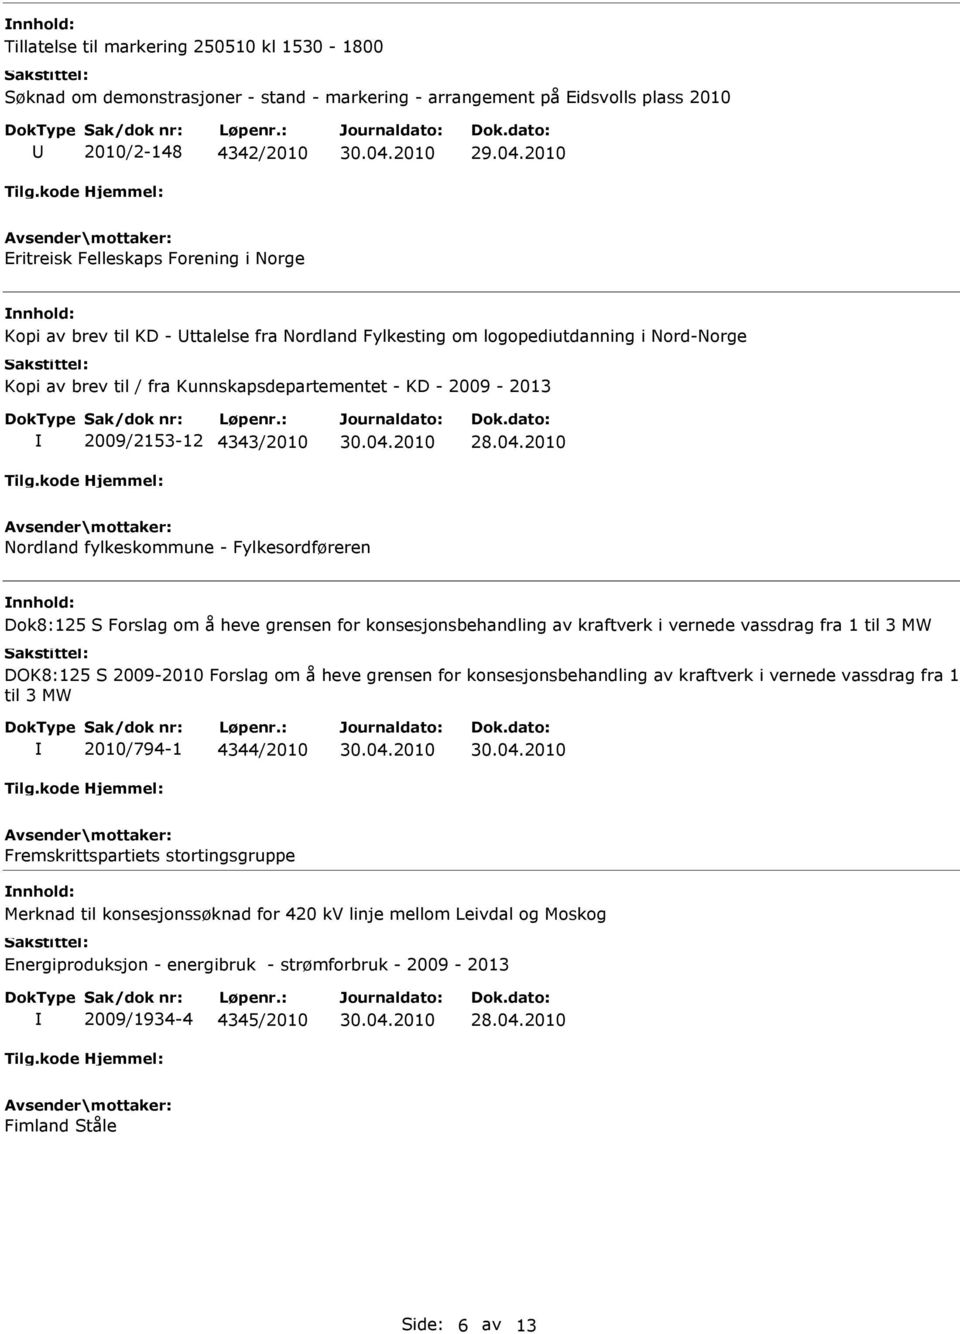 2010 Nordland fylkeskommune - Fylkesordføreren Dok8:125 S Forslag om å heve grensen for konsesjonsbehandling av kraftverk i vernede vassdrag fra 1 til 3 MW DOK8:125 S 2009-2010 Forslag om å heve